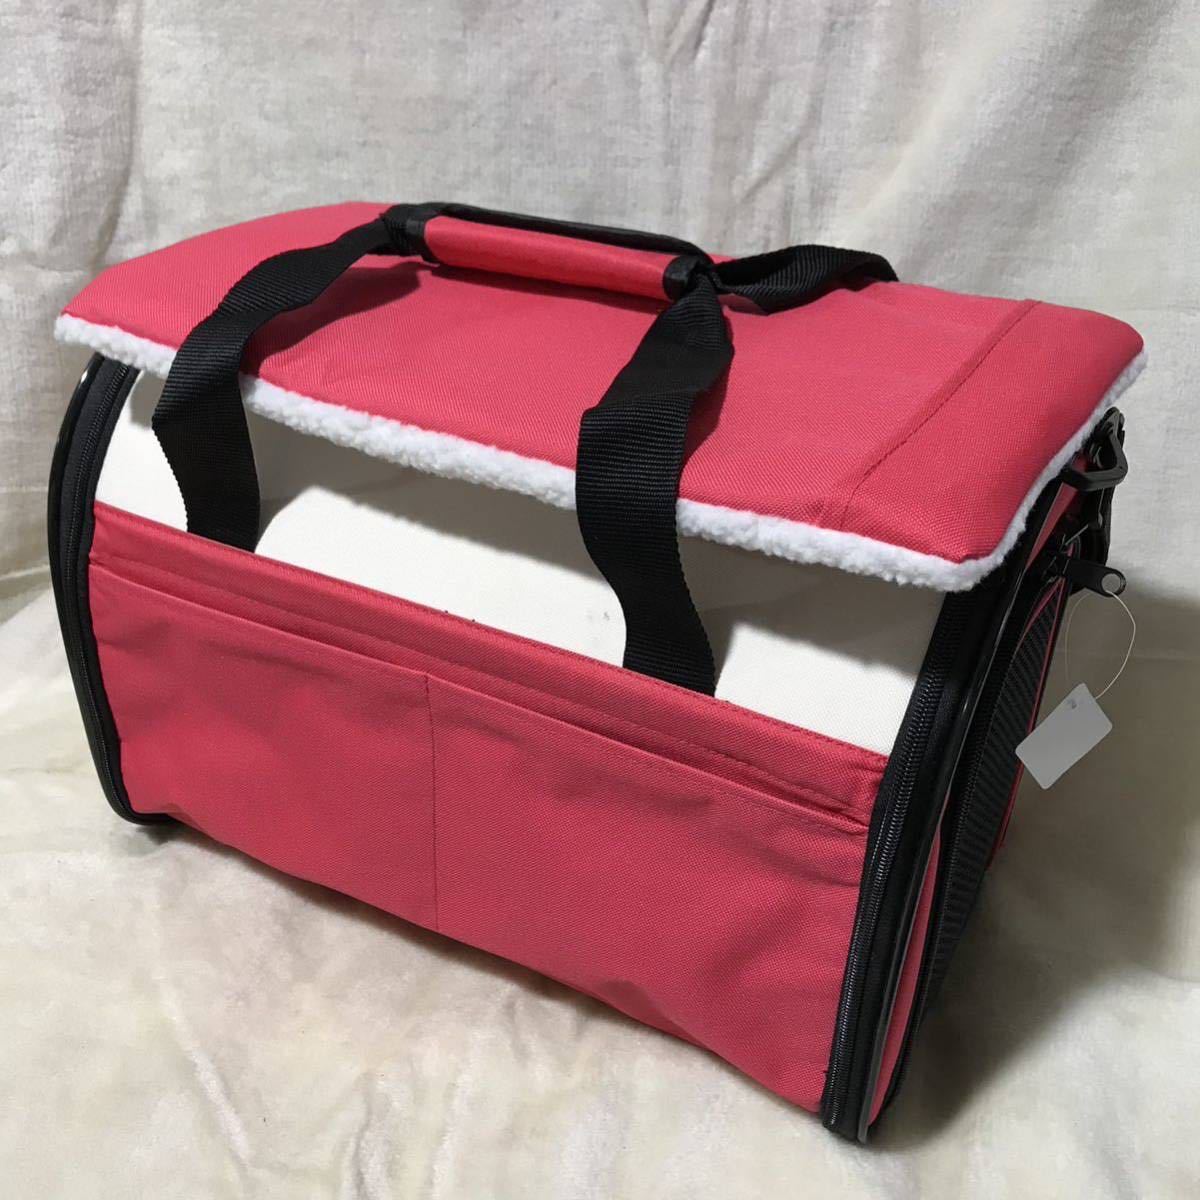 C456 складной soft Carry не использовался хранение товар бумага с биркой "теплый" белый / розовый для домашних животных Carry кейс 